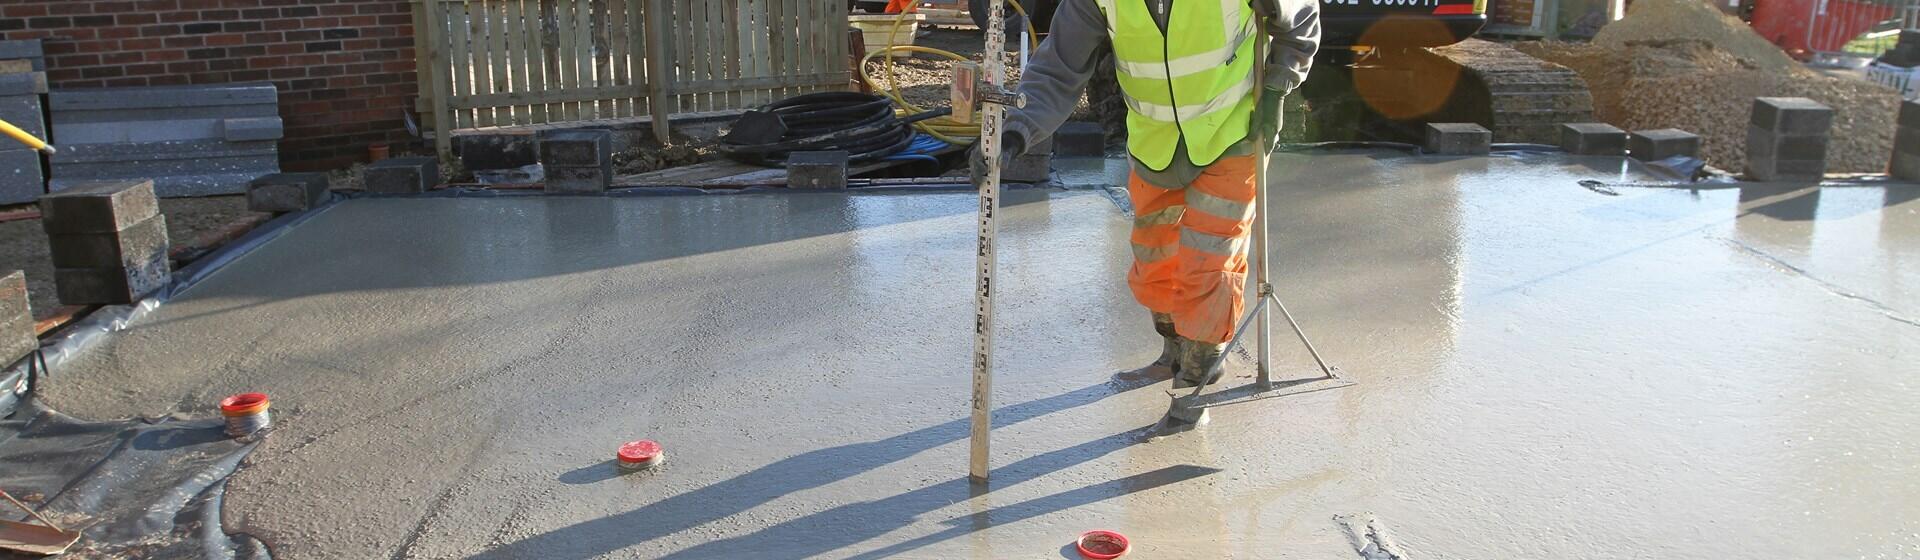 Beam block floor concrete reinforcement 5